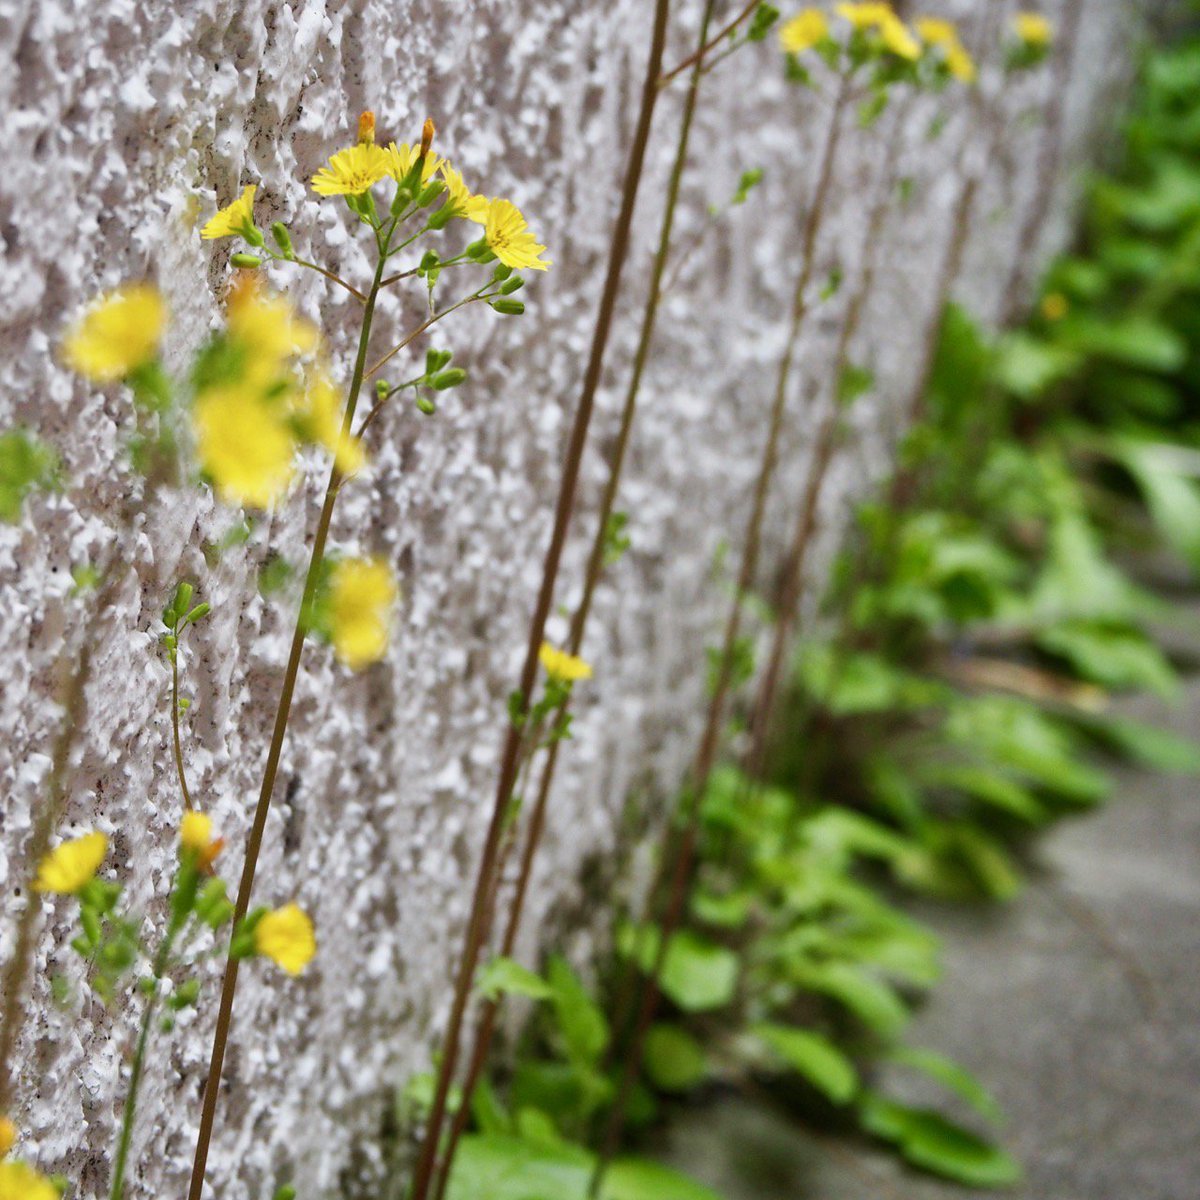 かんだた Pa Twitter 店の入口の塀のところに 雑草が生えてきました つい 取らずにおいたら 黄色い花が咲きました お客様が教えてくれたのですが これは鬼田平子 オニタビラコ という草なのだそうです 雑草とまとめて呼んでしまいますが どんな草にも名前が